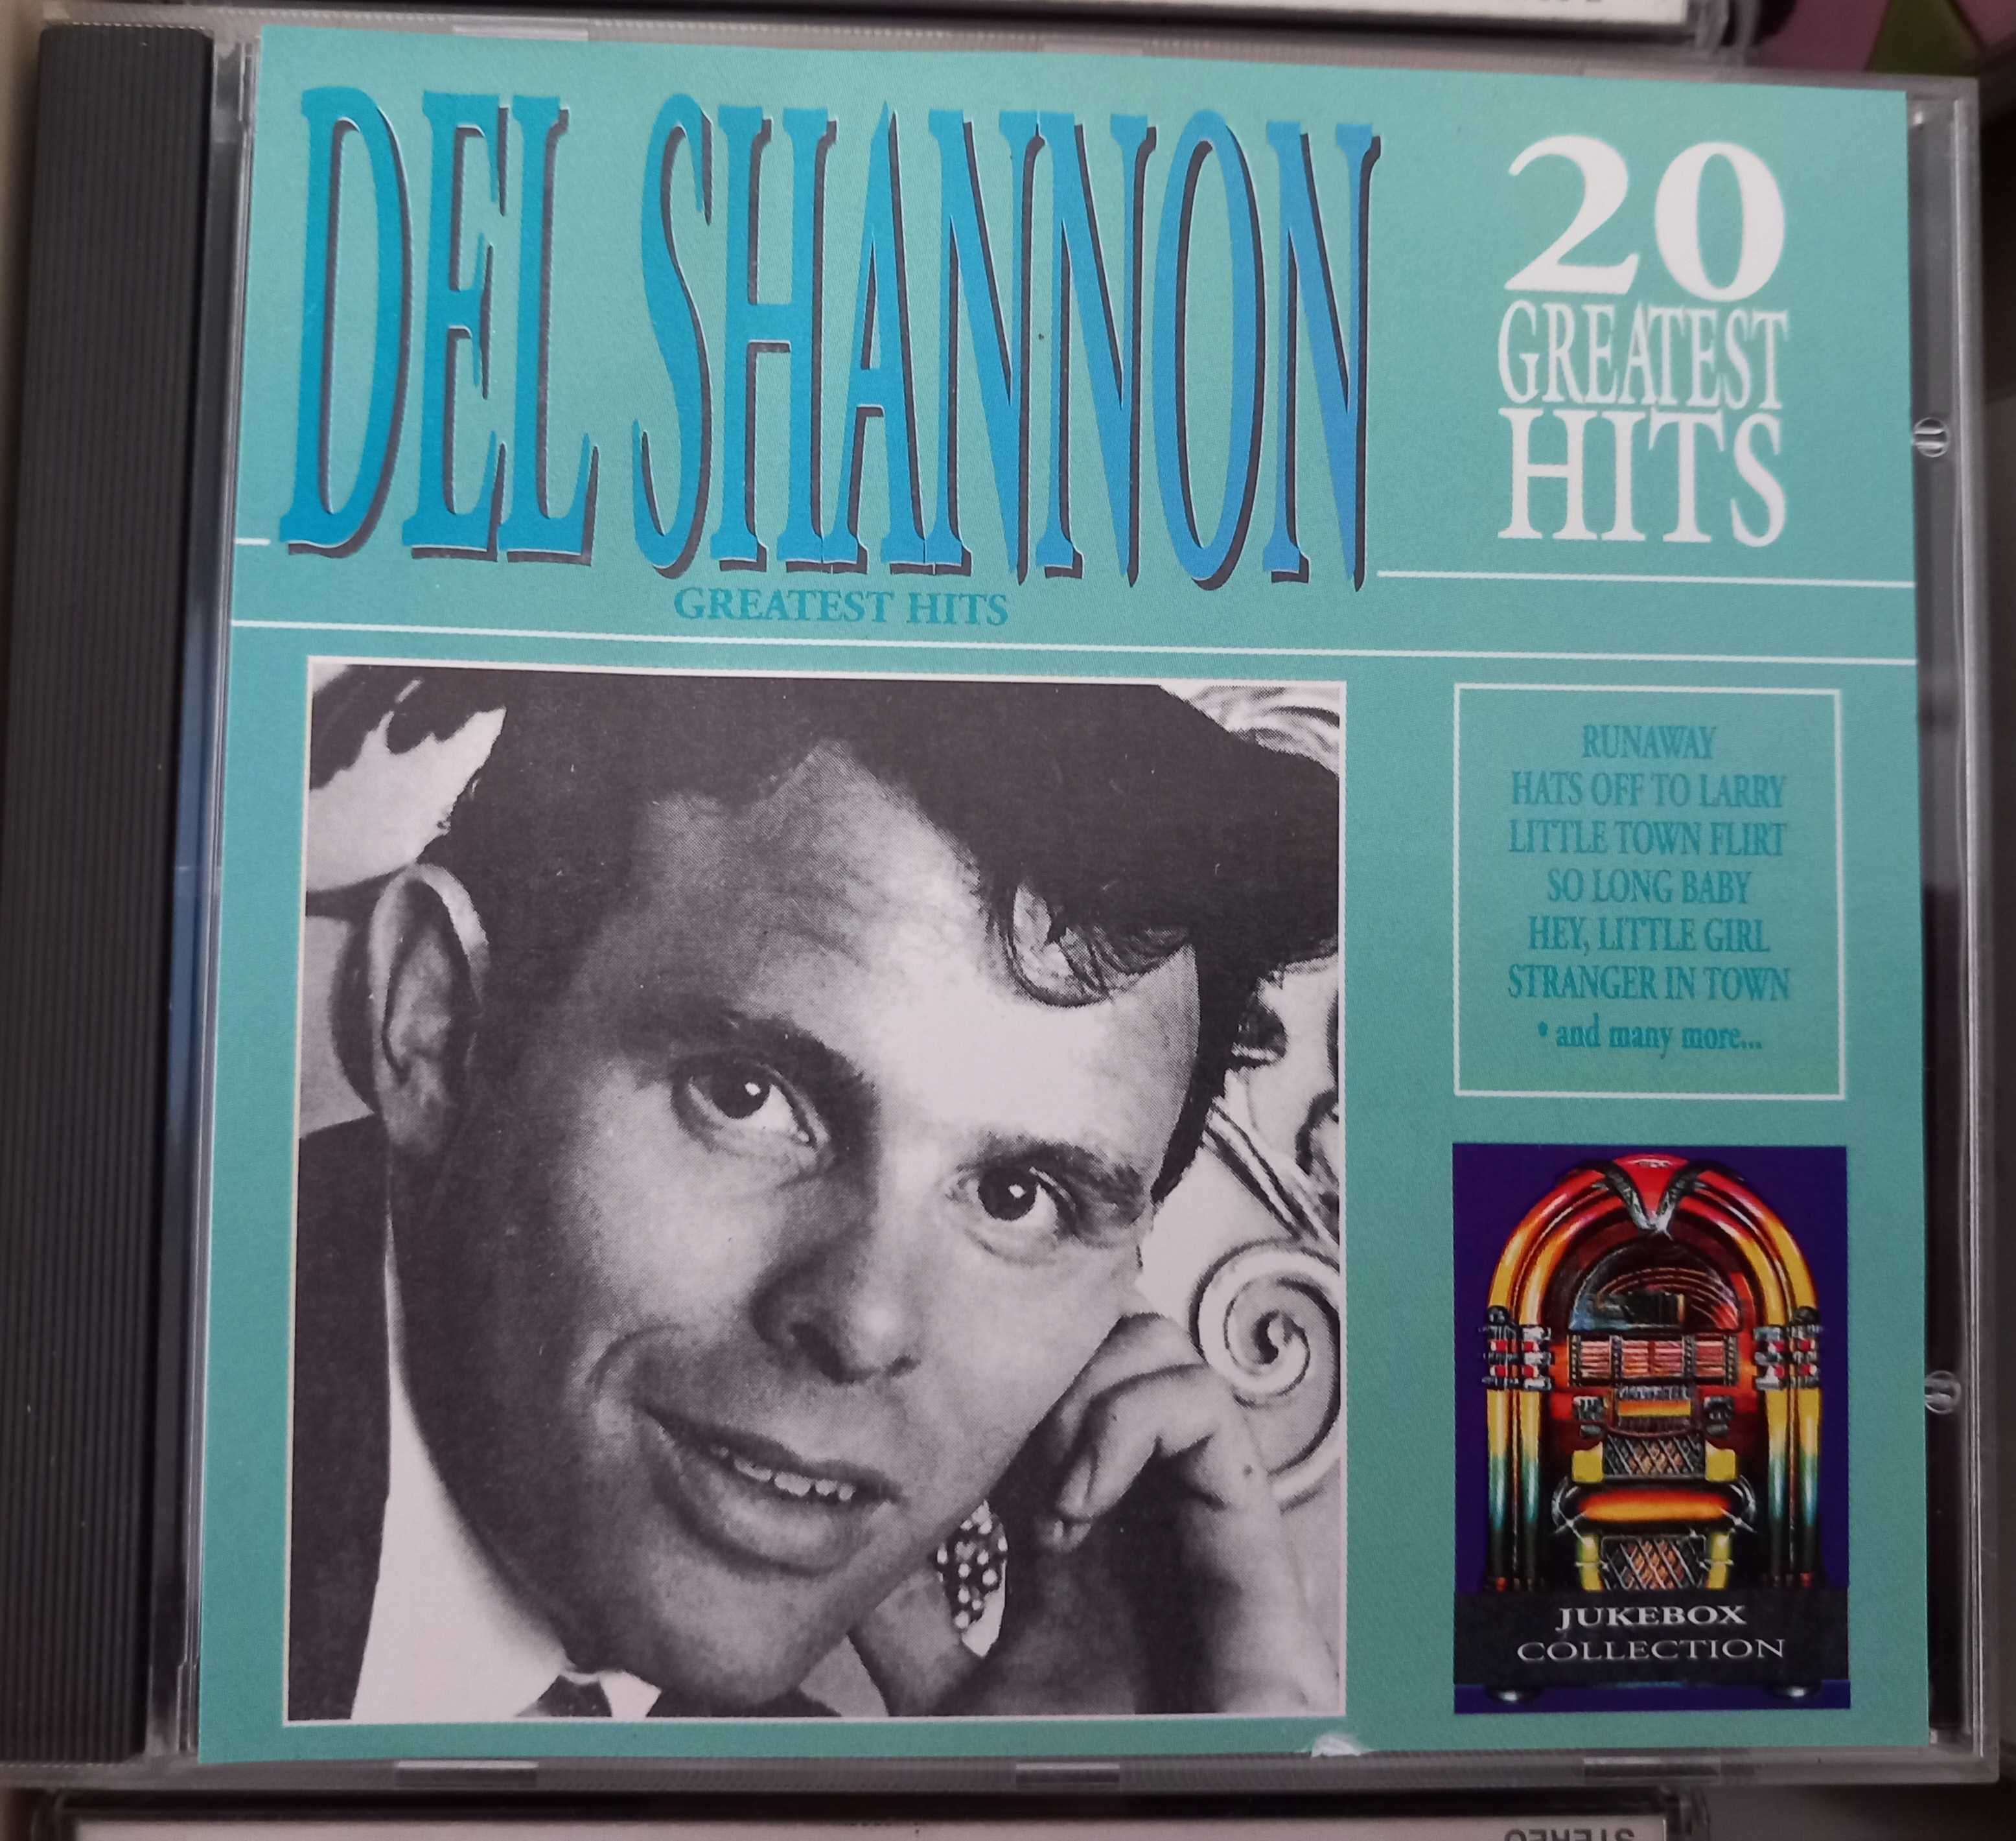 CDs - Miles Davis, Del Shannon portes incluídos